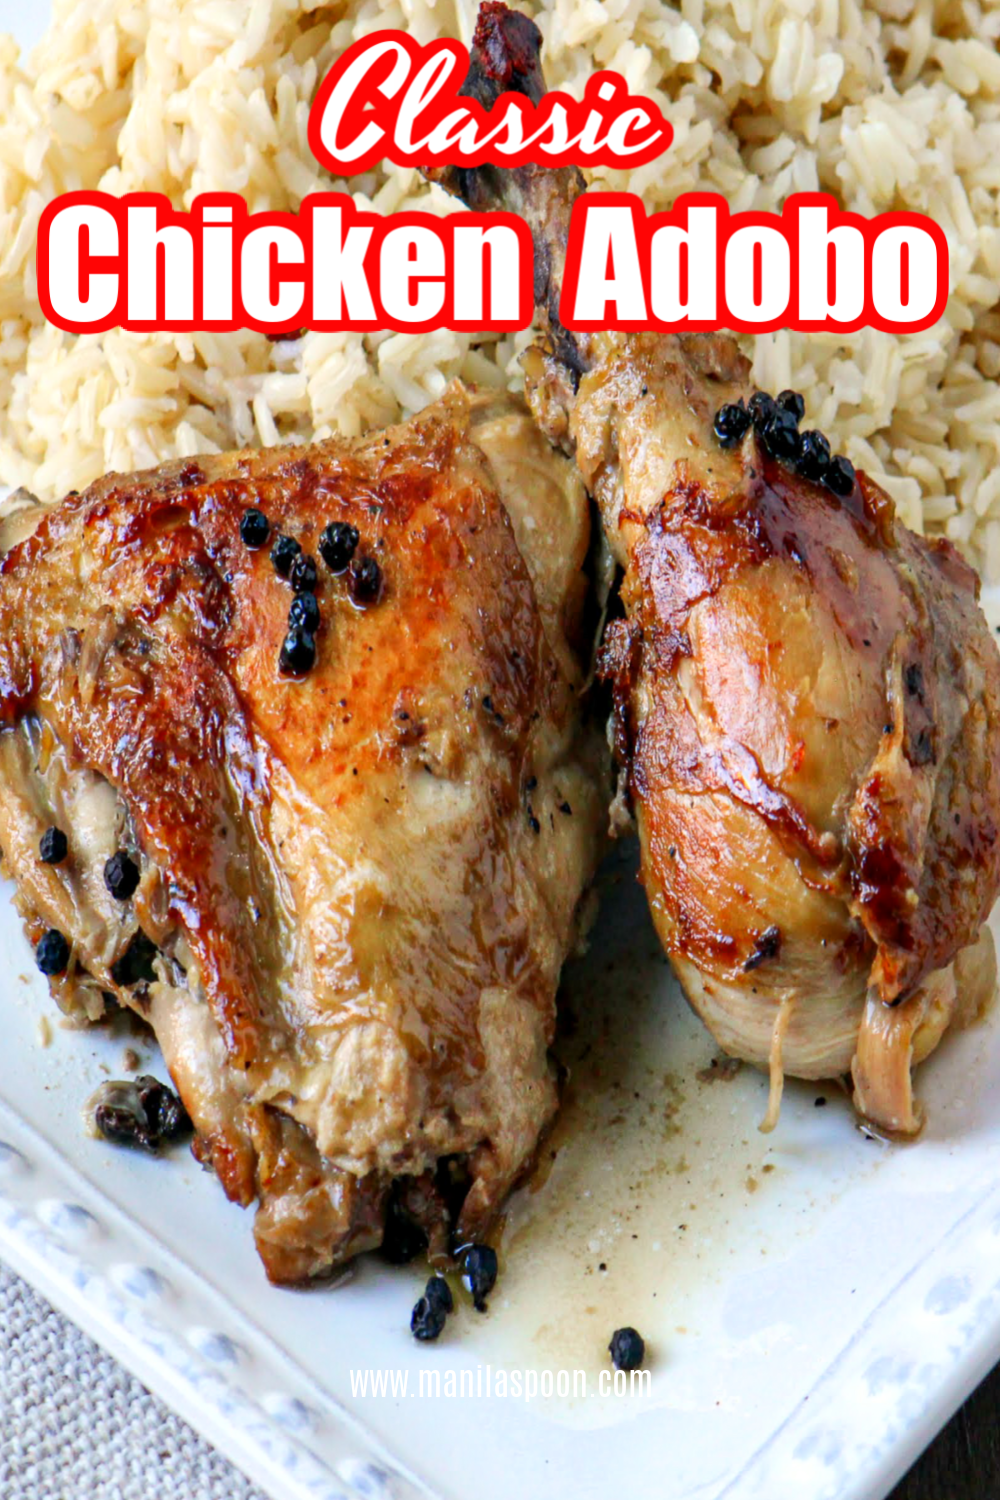 Chicken Adobo